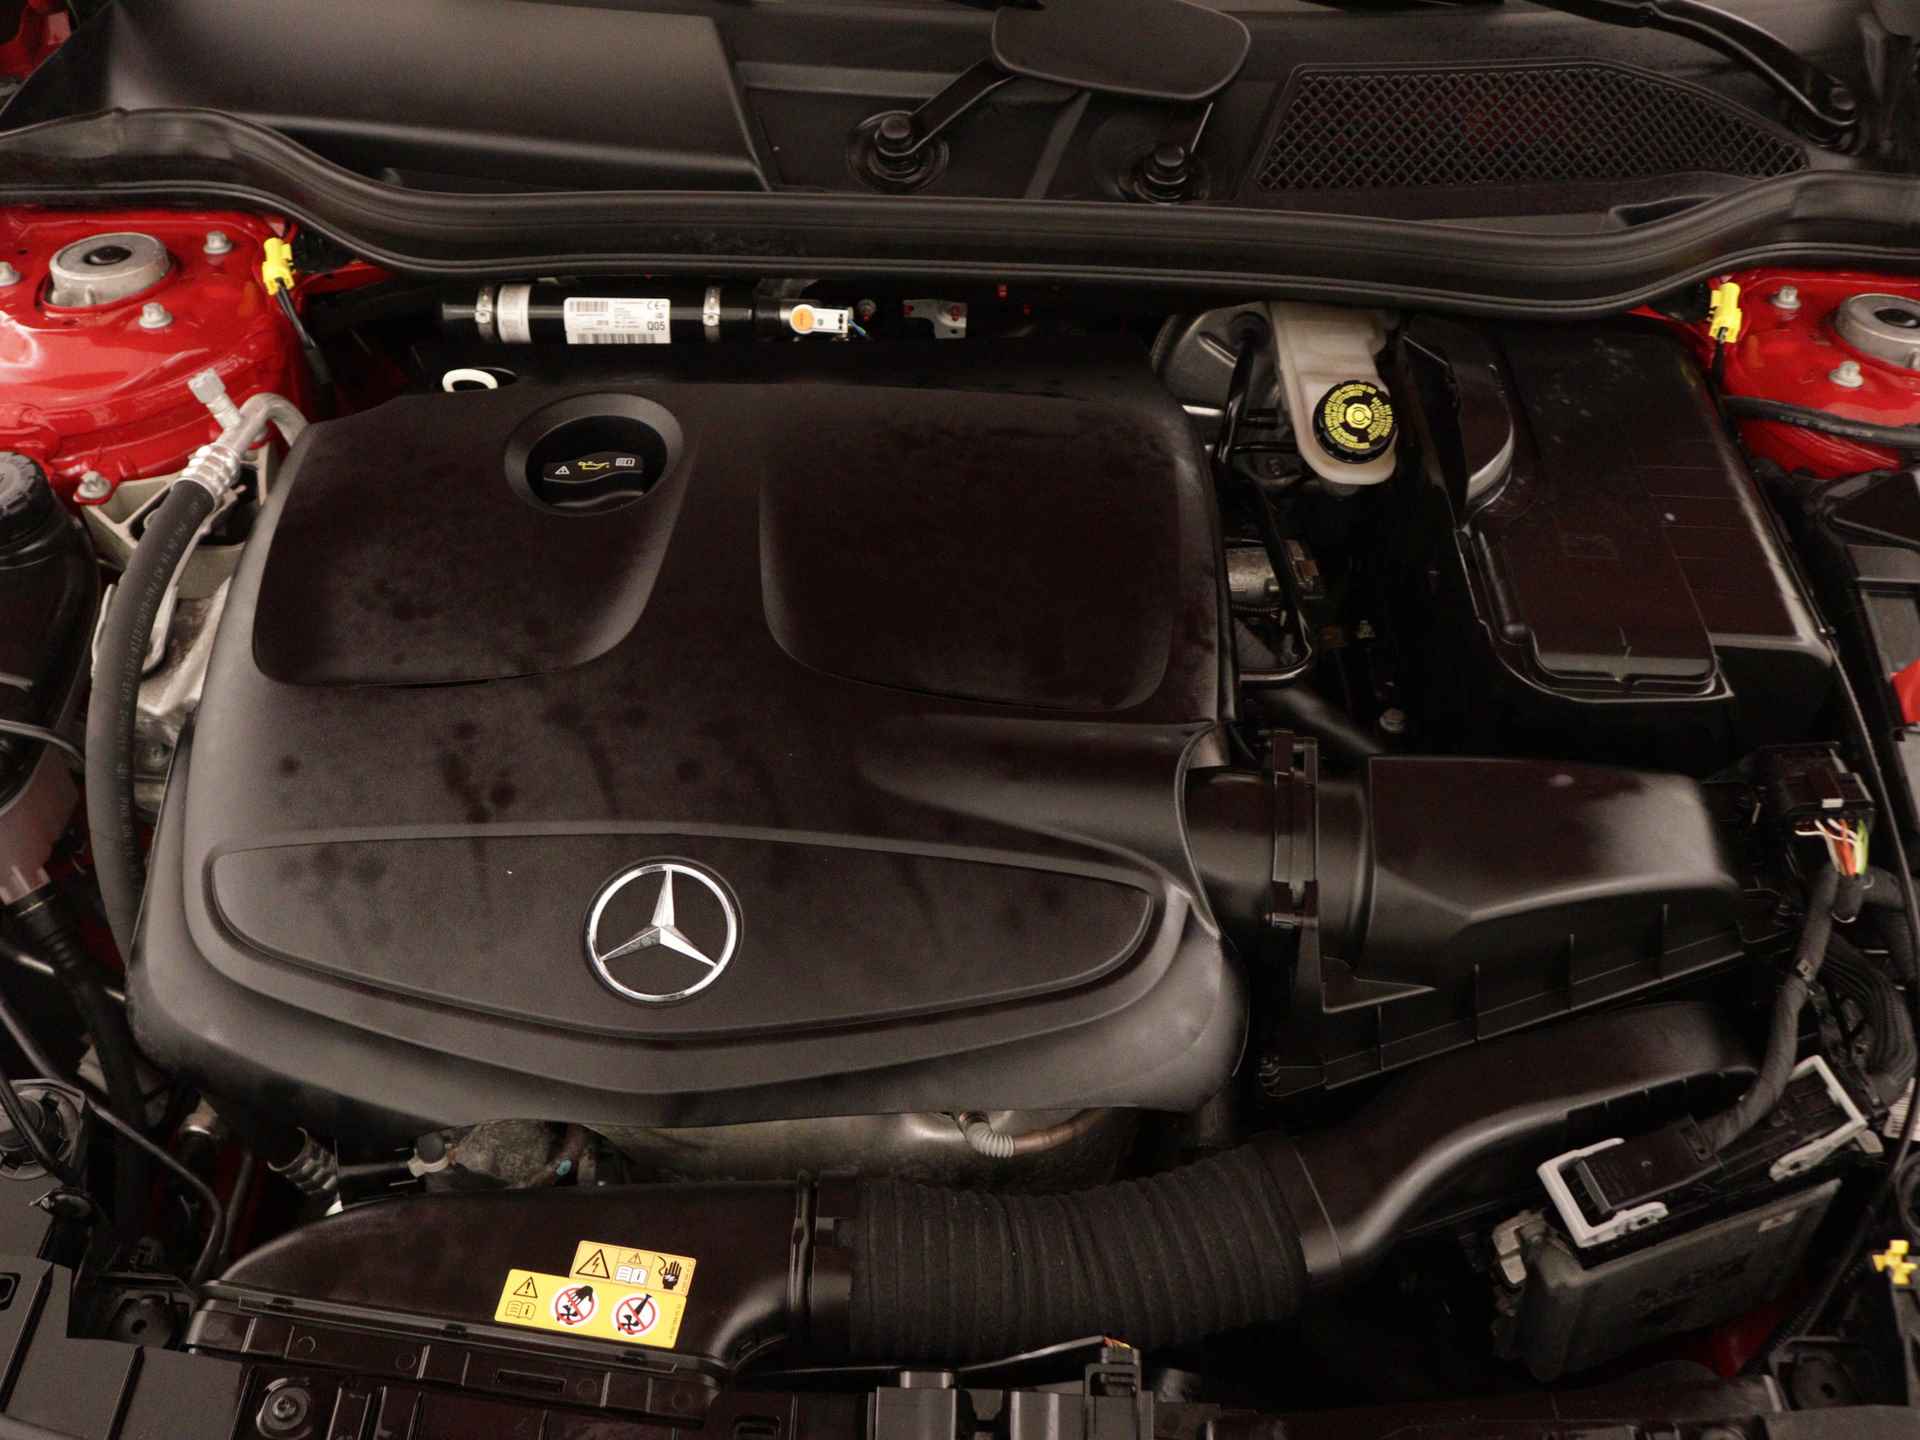 Mercedes-Benz GLA 200 AMG Premium Plus Limited | Multispaaks lichtmetalen velgen | Treeplanken | Navigatie | Parking support | Leder bekleding | inclusief 24 maanden MB Certified garantie voor europa - 36/39